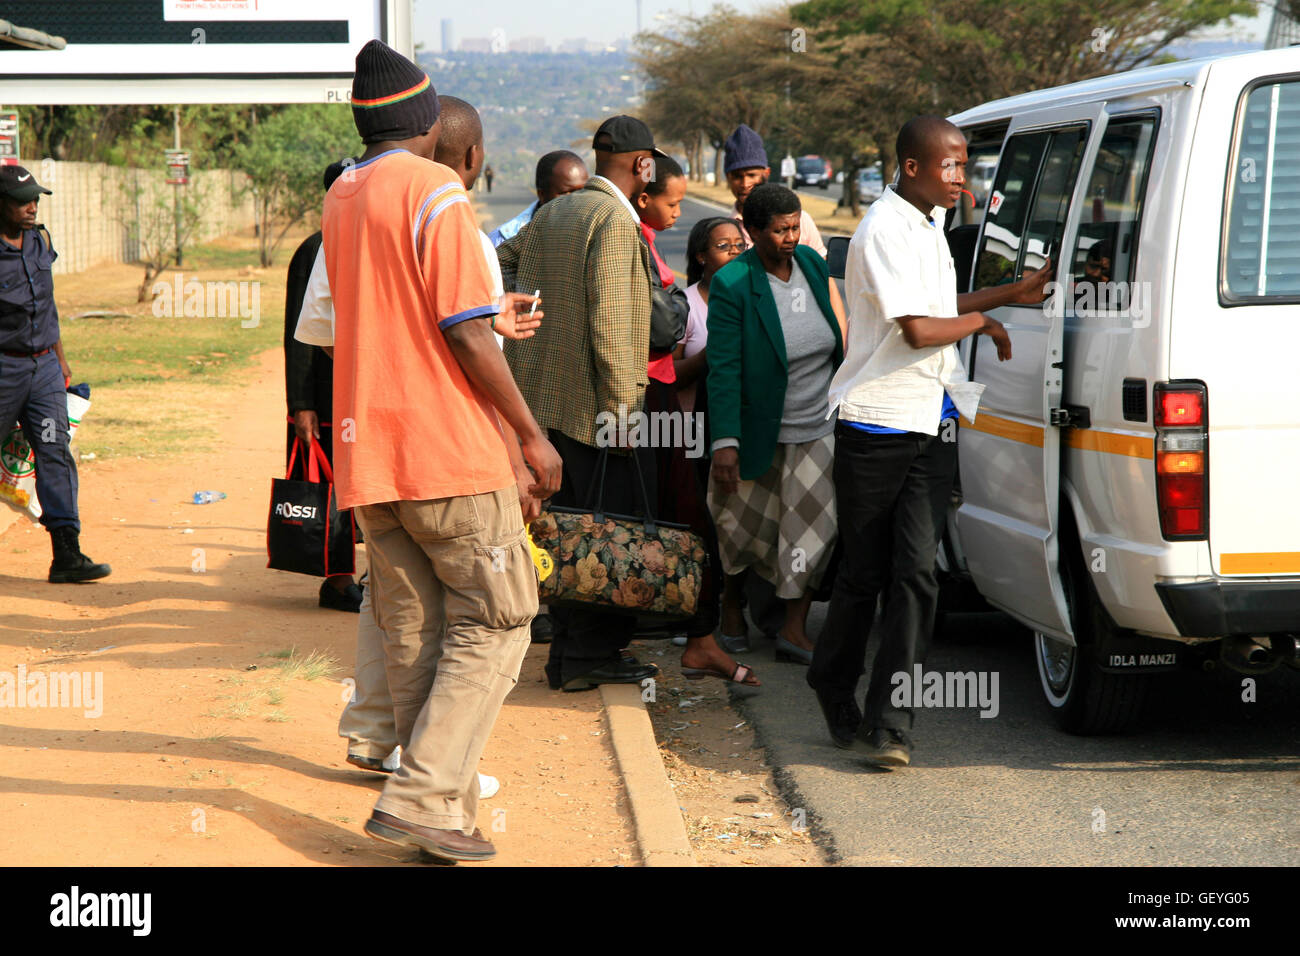 Taxi Commuters, Johannesburg, Gauteng, South Africa Stock Photo